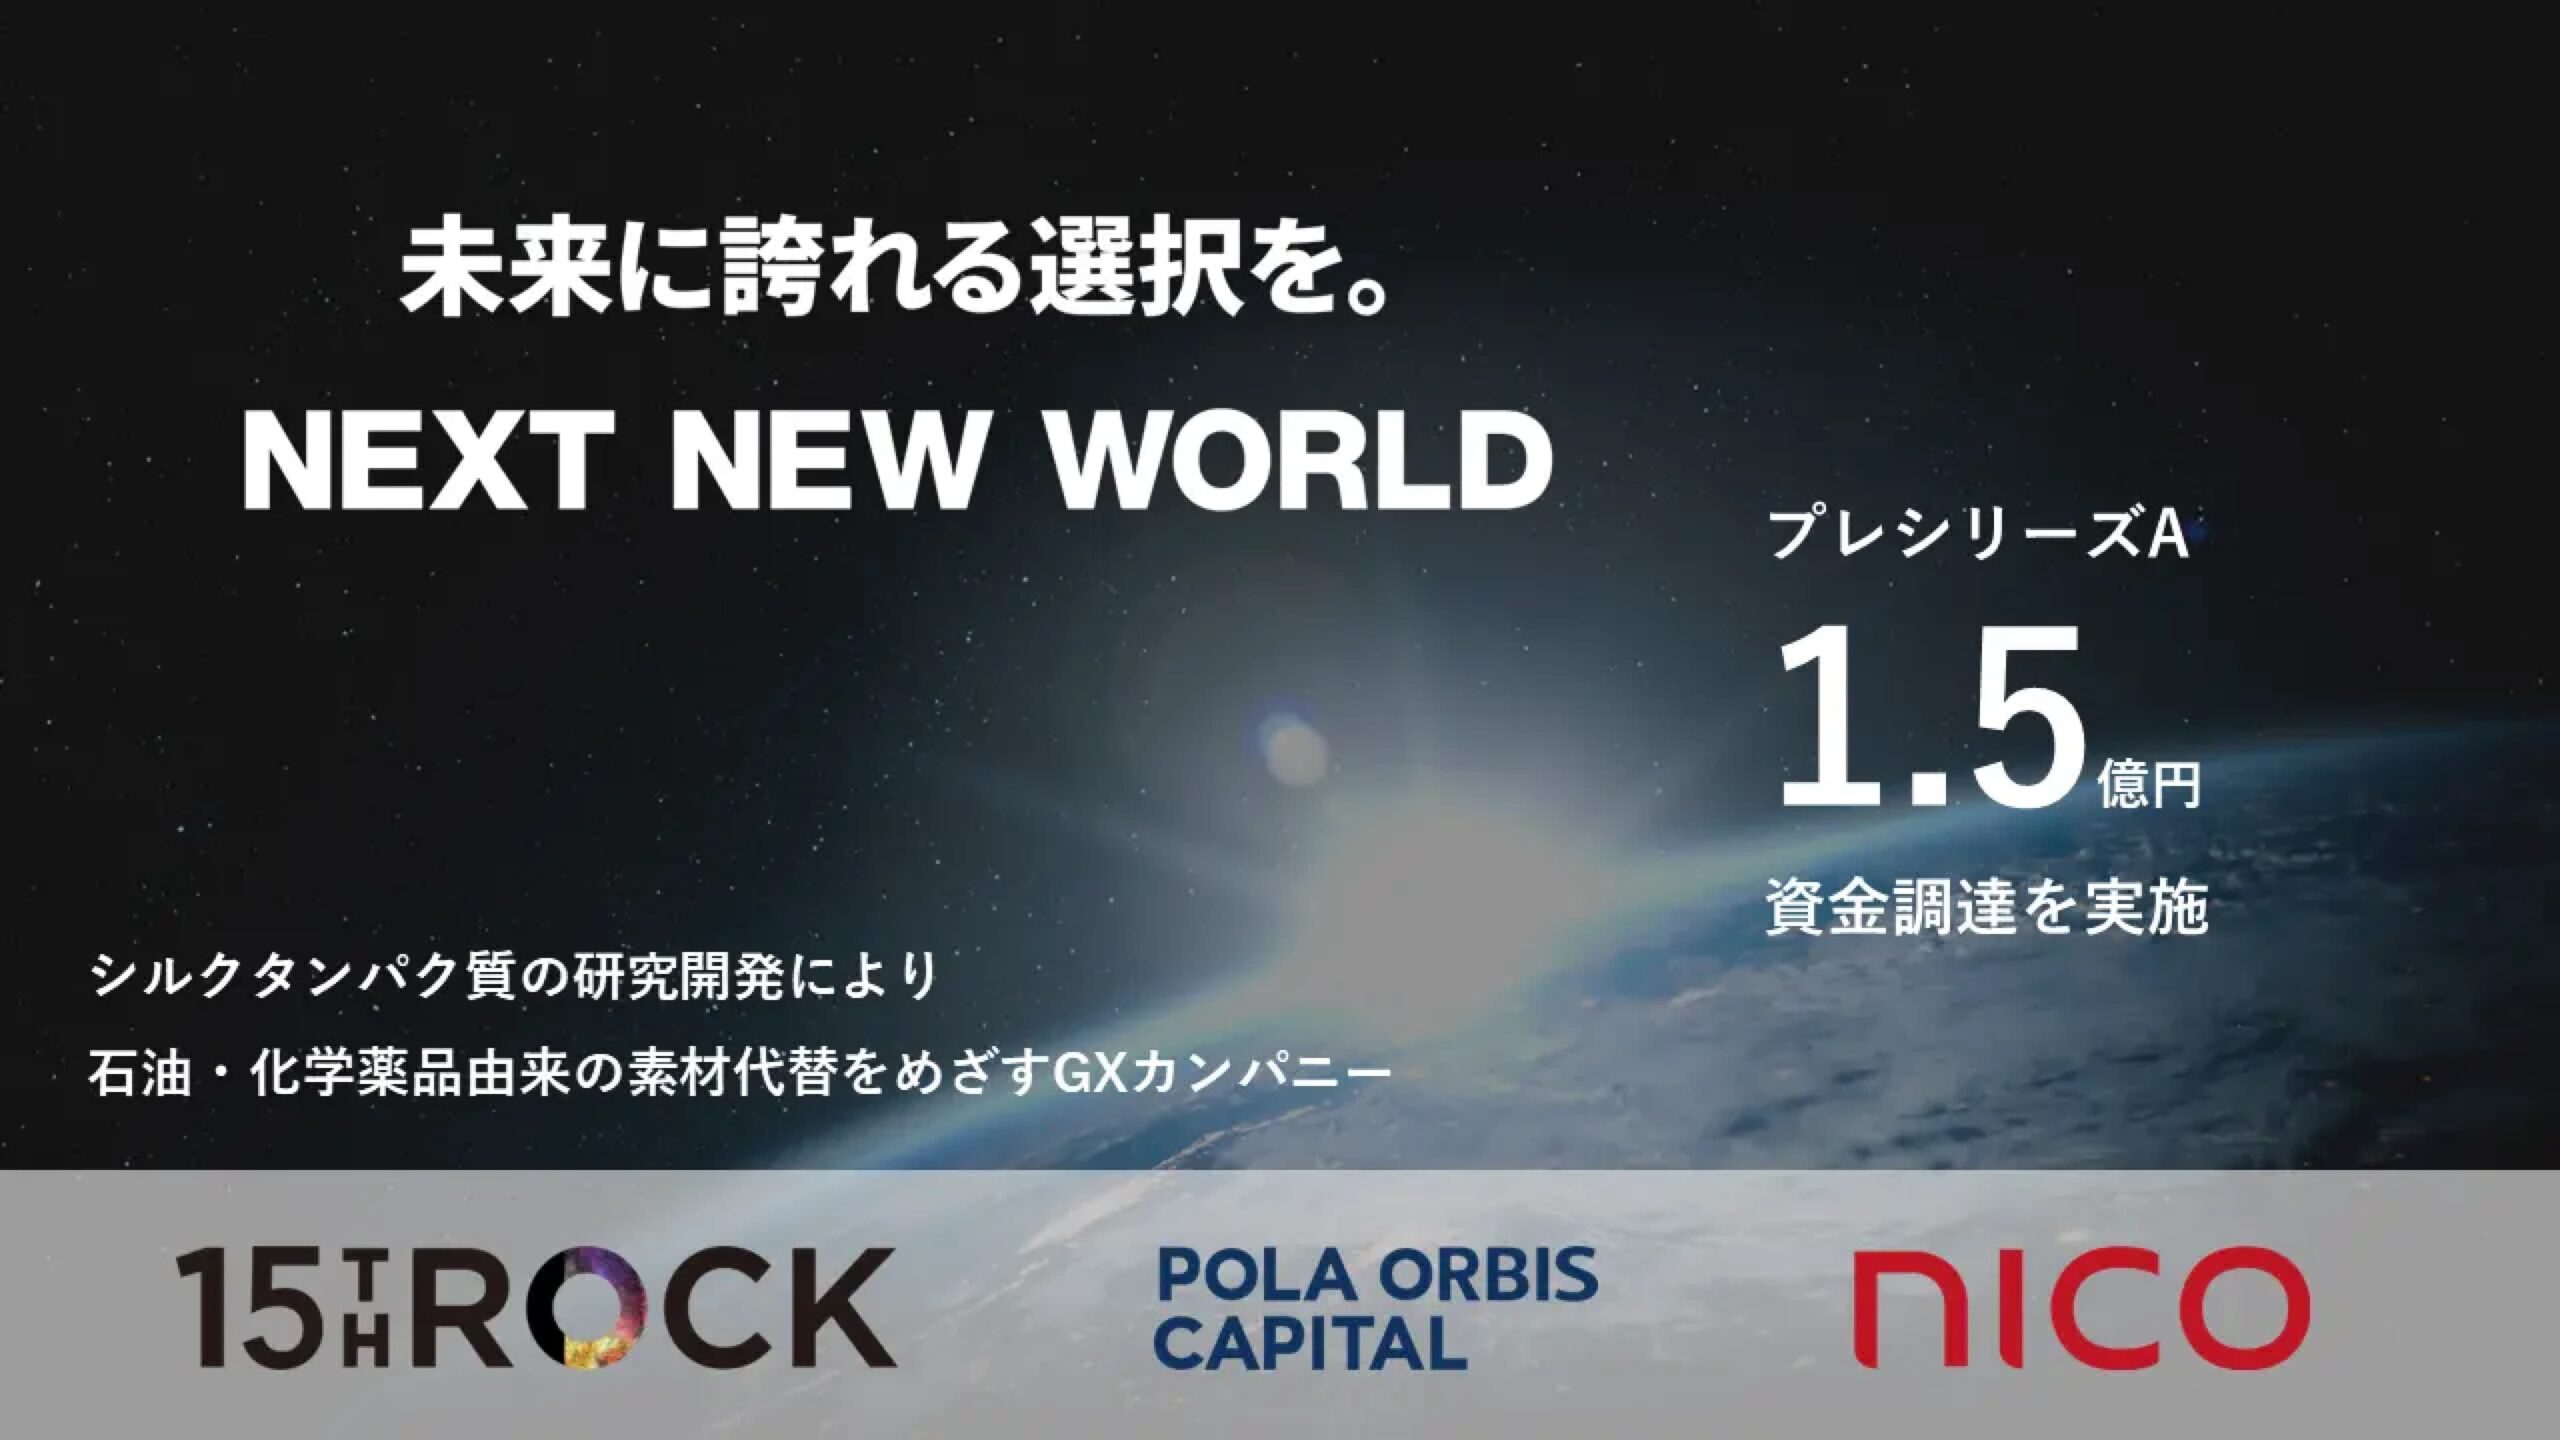 株式会社NEXT NEW WORLD、プレシリーズAにて1.5億円の資金調達を完了